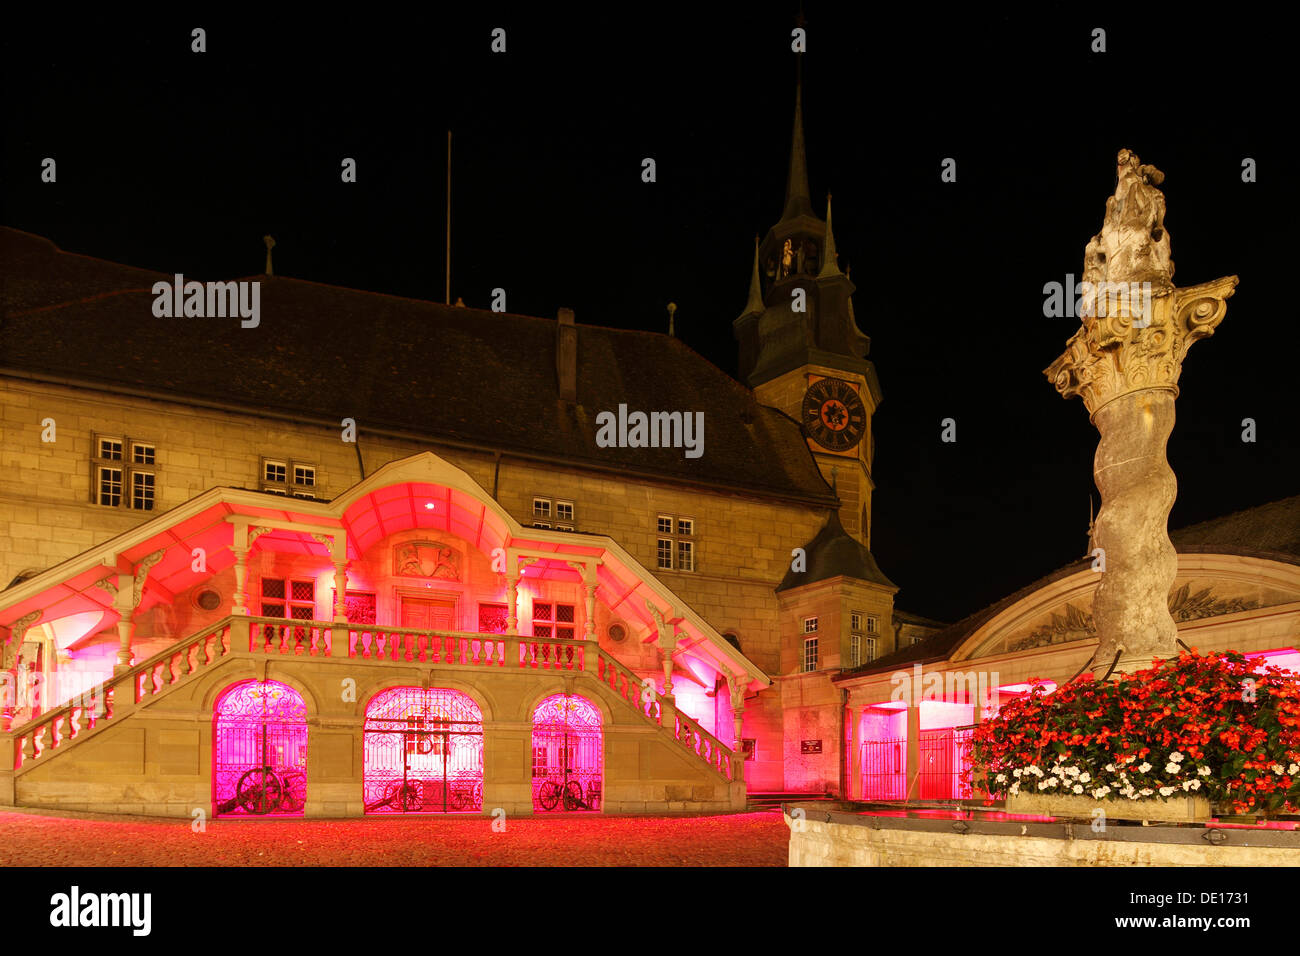 Place de l'Hôtel de Ville, place de la ville avec l'hôtel de ville, Fribourg, Suisse Française, Suisse, Europe Banque D'Images